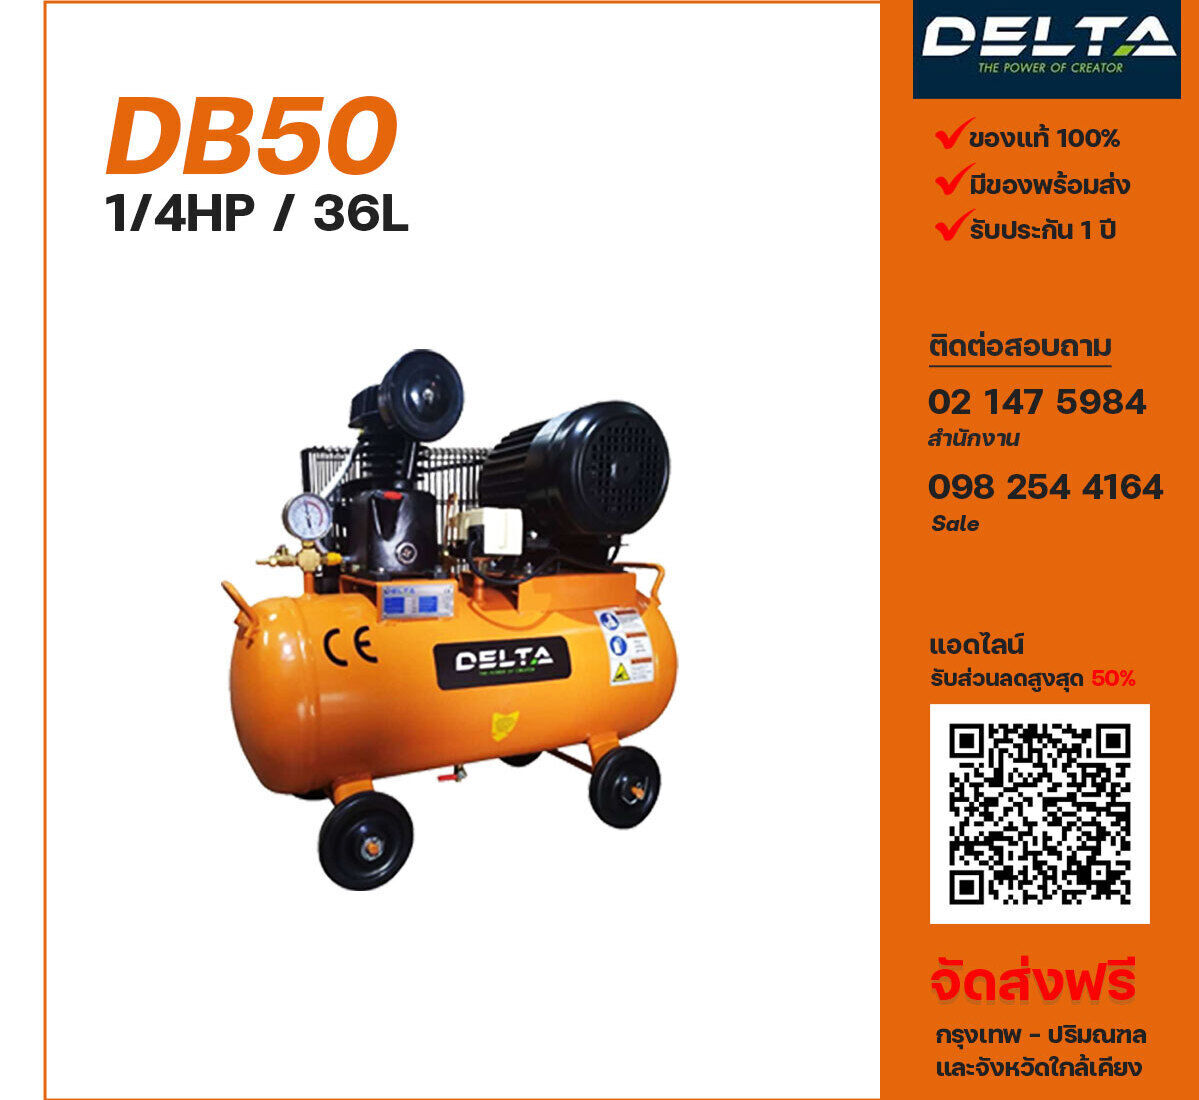 ปั๊มลมเดลต้า DELTA DB50 220V ปั๊มลมลูกสูบ ขนาด 1 สูบ 1/4 แรงม้า 36 ลิตร DELTA พร้อมมอเตอร์ ไฟ 220V ส่งฟรี กรุงเทพฯ-ปริมณฑล รับประกัน 1 ปี